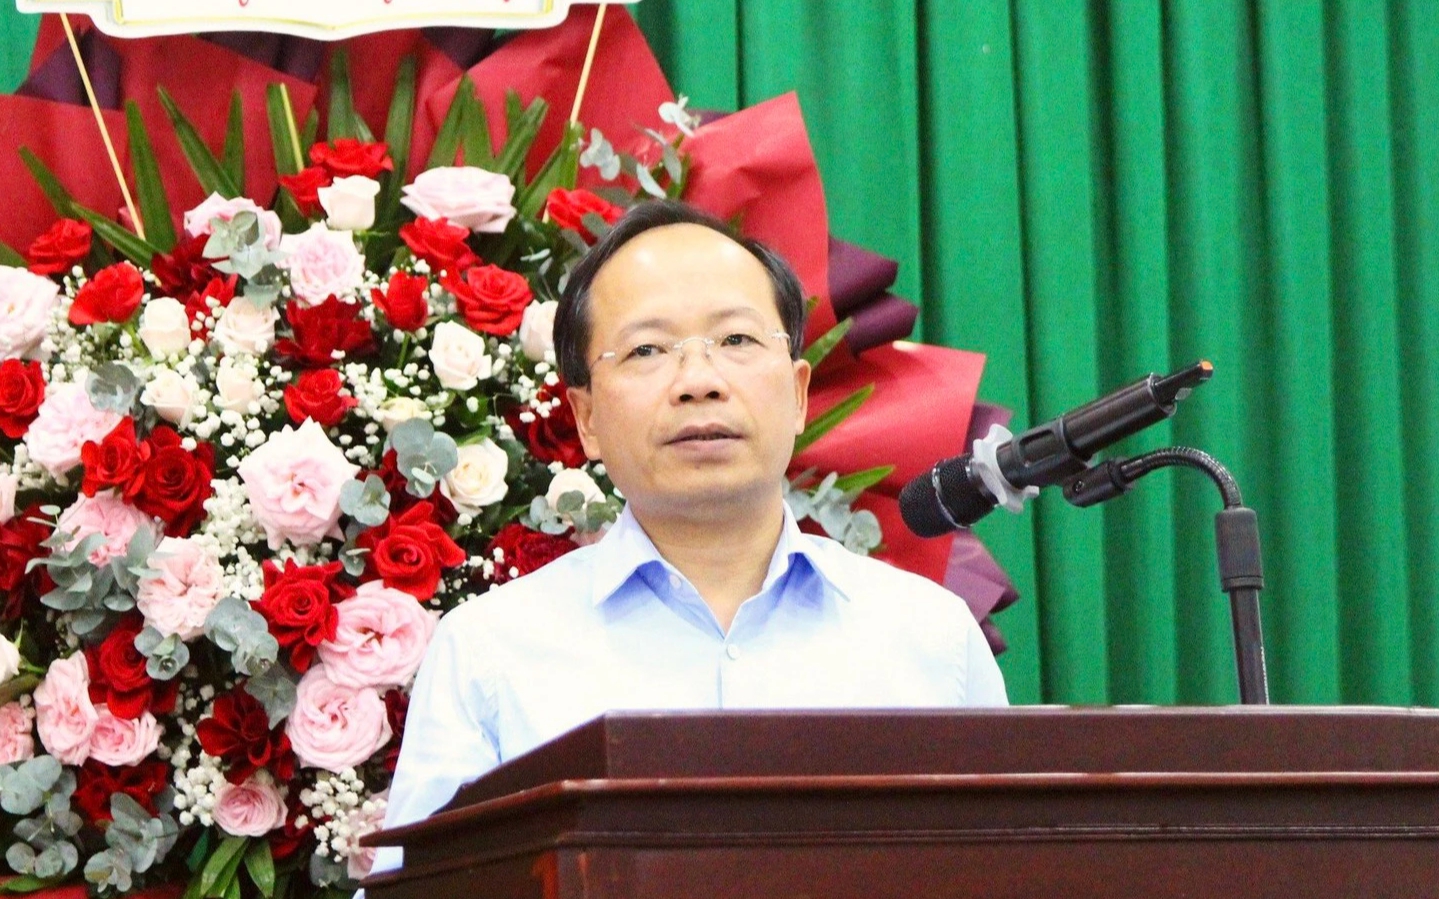 Ban quản lý dự án Mỹ Thuận cần nhanh chóng khởi công, hoàn thành loạt dự án ở miền Tây